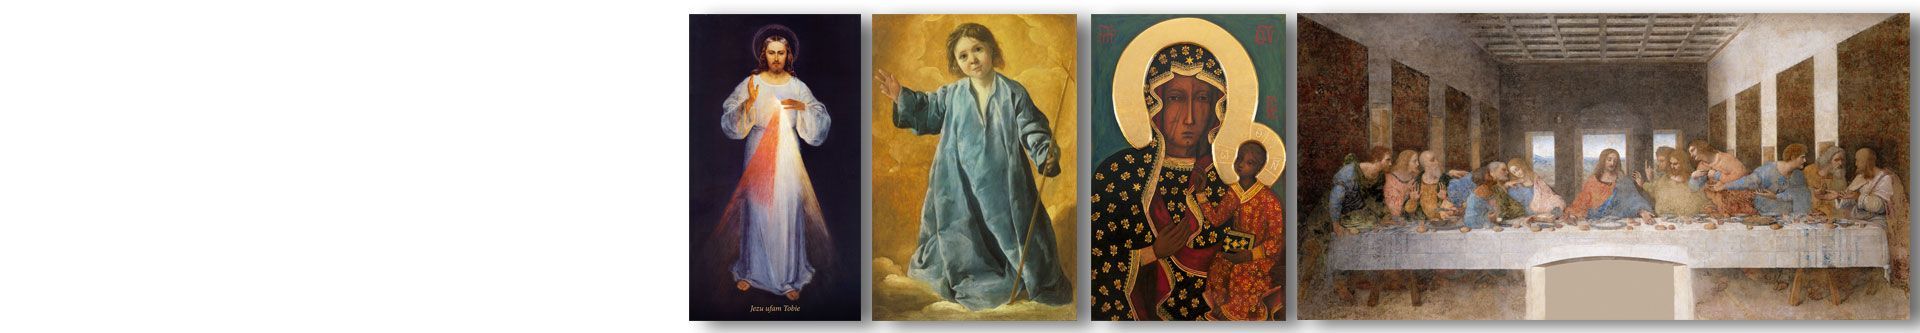 Obrazy religijne, święte, sakralne na ścianę, stare, nowoczesne z Panem Jezusem, Matką Boską, Maryją z Dzieciątkiem Jezus i inne - sklep Grafiki Obrazy